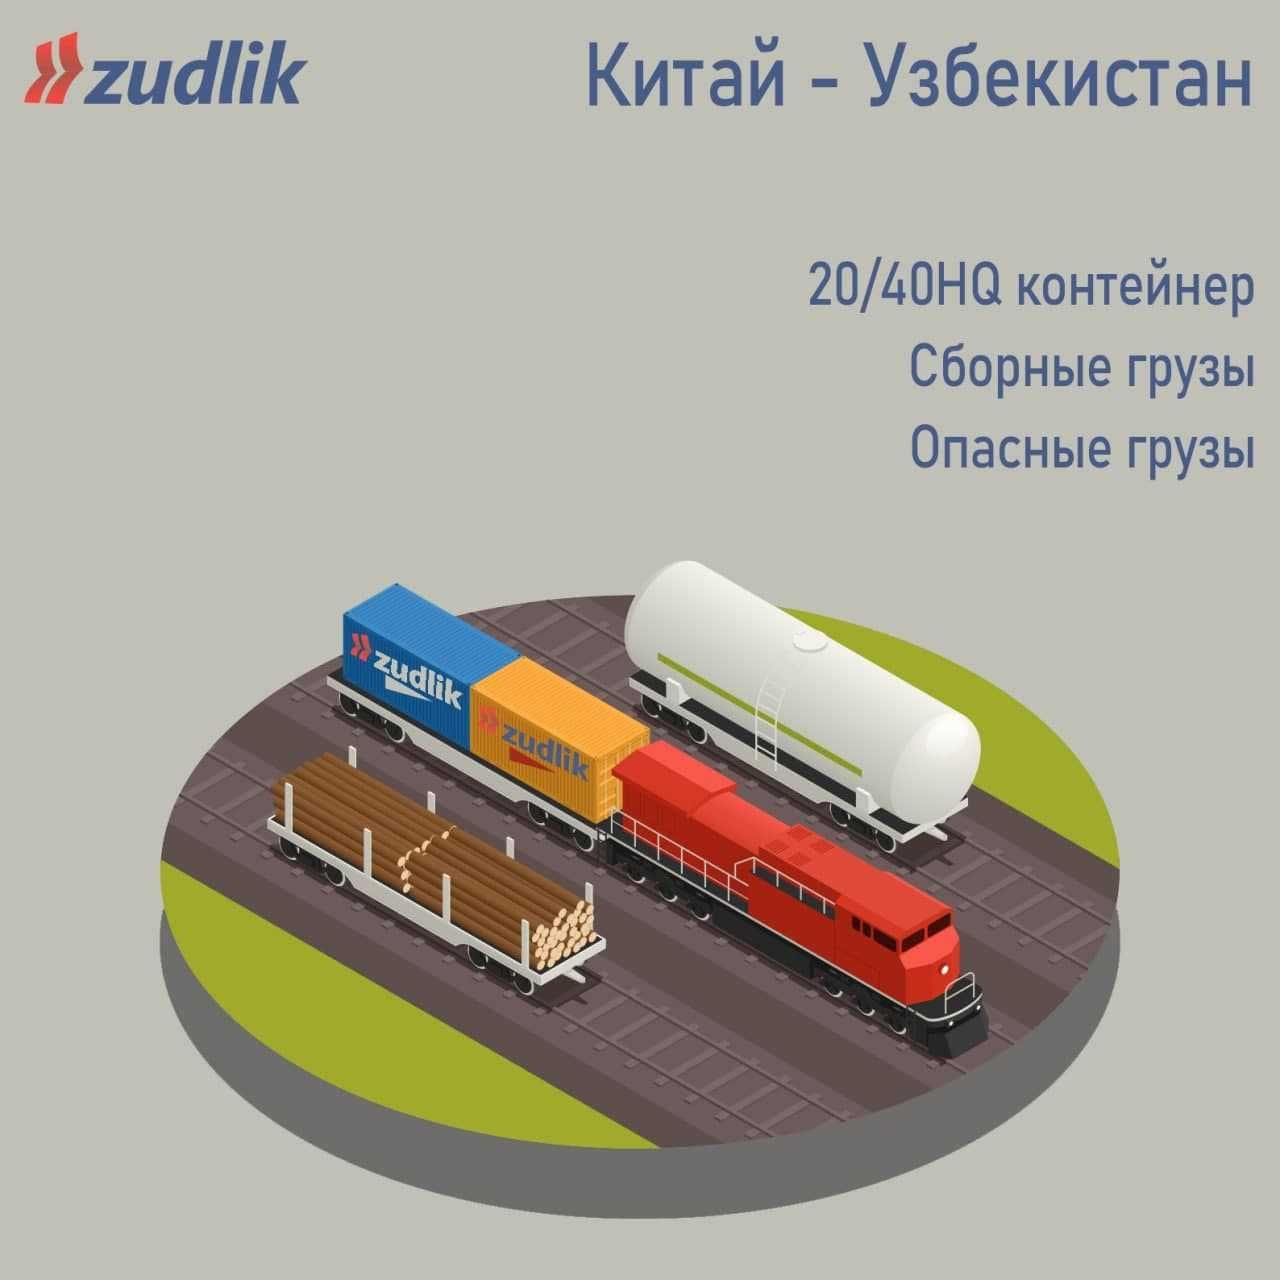 Компания ZUDLIK предоставляет Логистические услуги по грузоперевозкам!